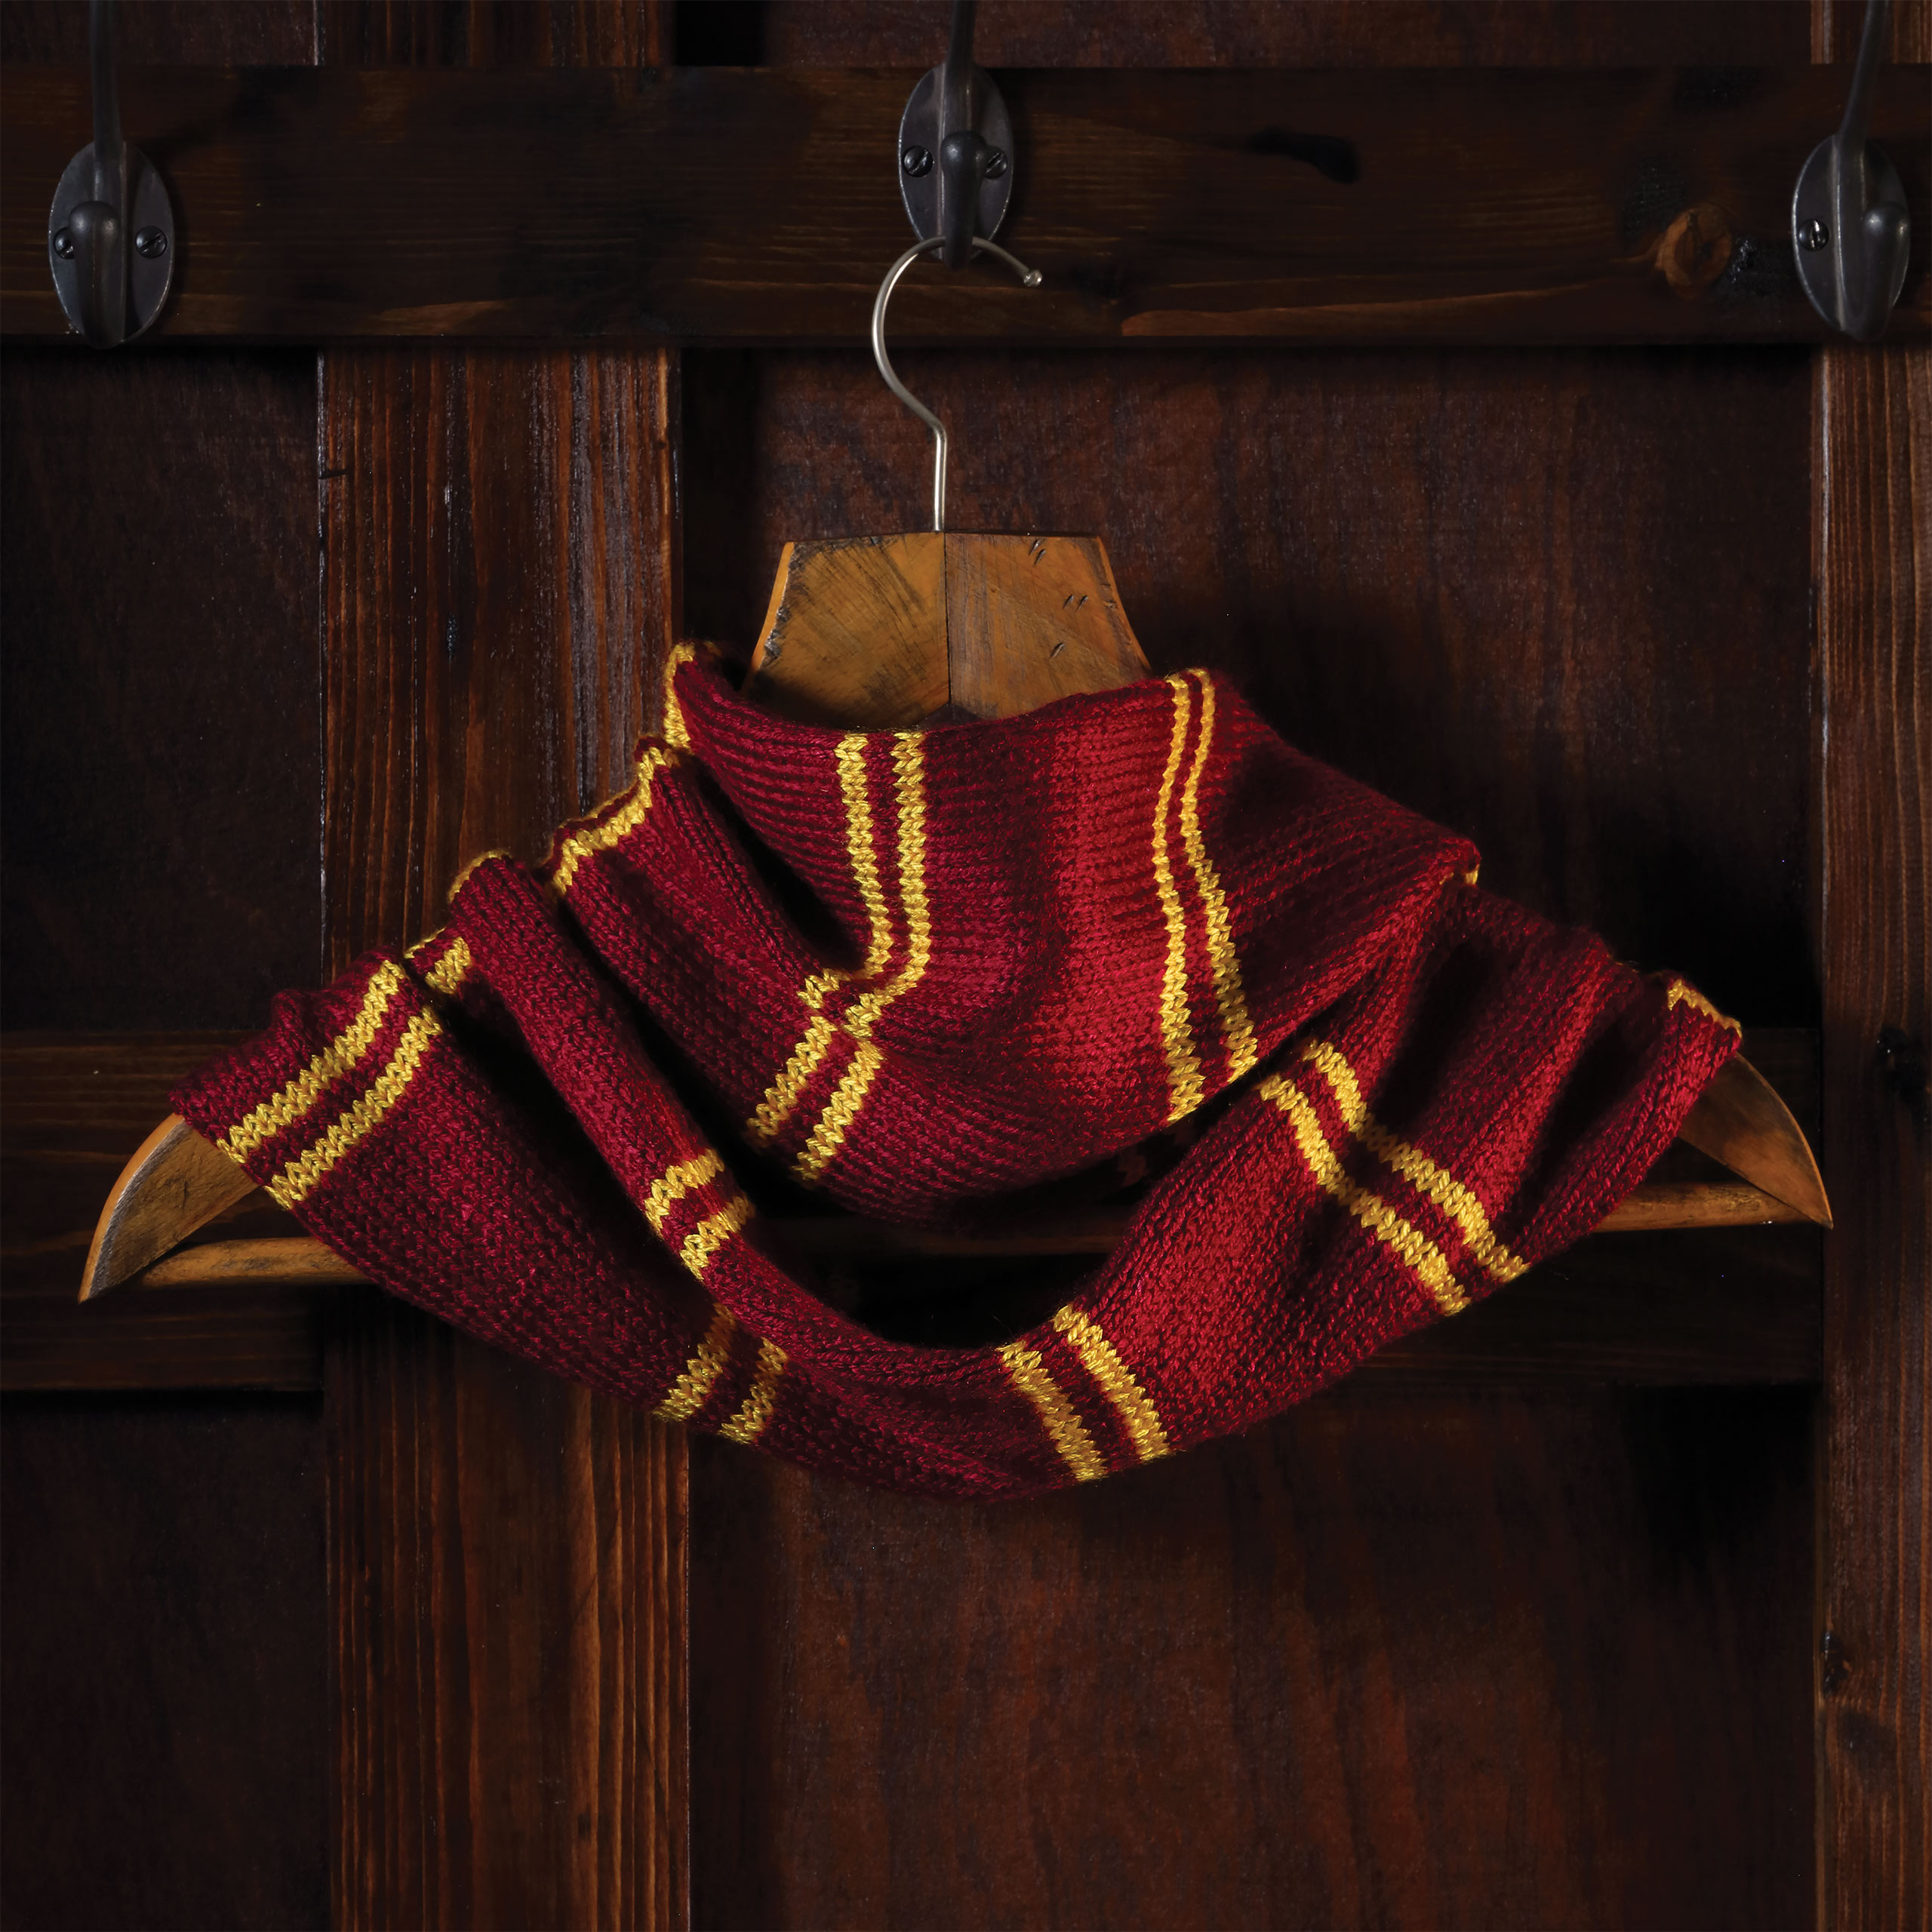 Gryffindor Loop Schal Strick-Set - Harry Potter